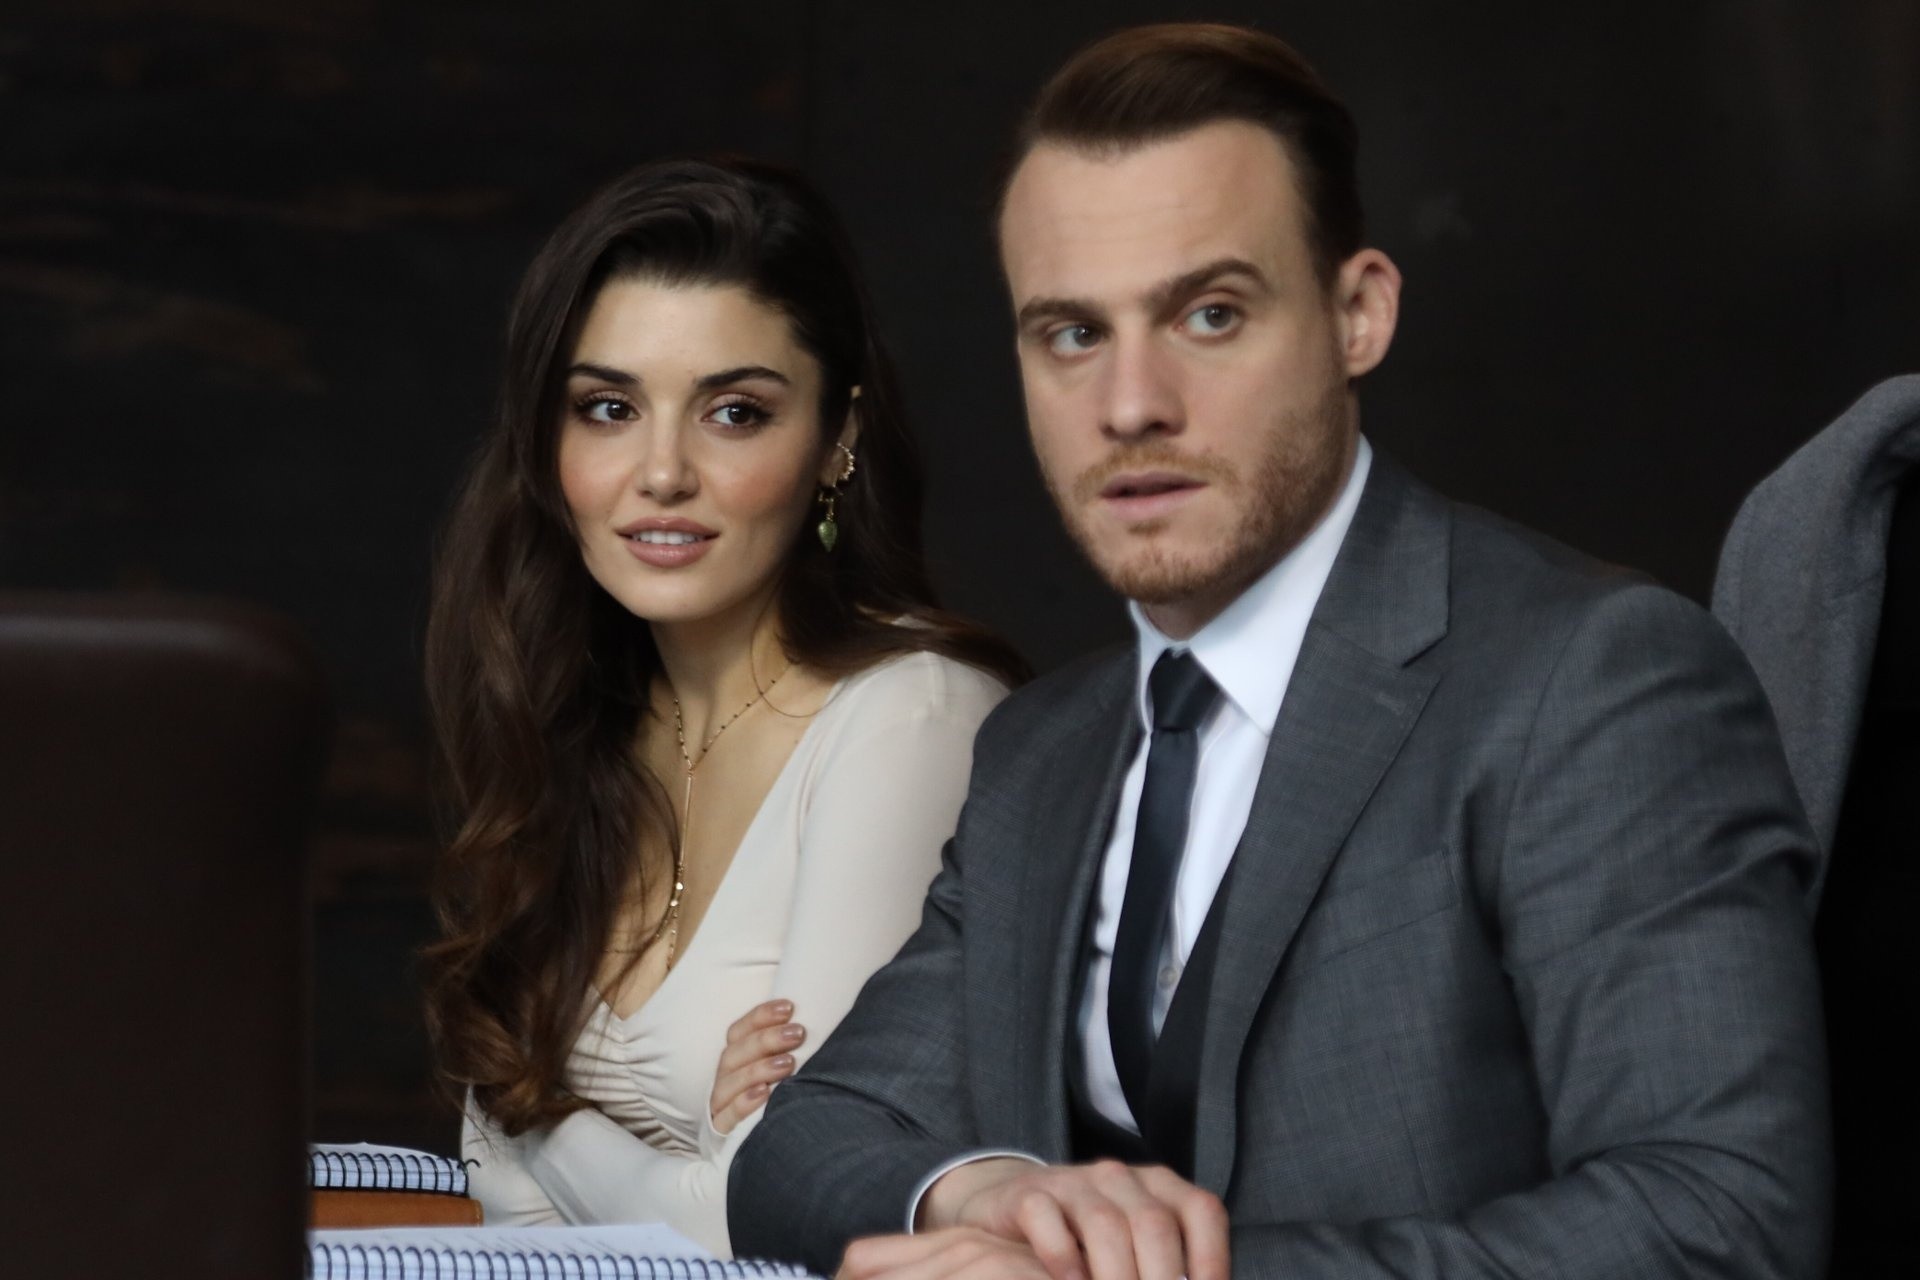 Lender Temptation Referendum Tureckie seriale: "Zapukaj do moich drzwi" odcinki 10-12. Serkan i Selin  mają romans? Sprawy znowu wymykają się spod kontroli! [STRESZCZENIA  ODCINKÓW] - Telemagazyn.pl